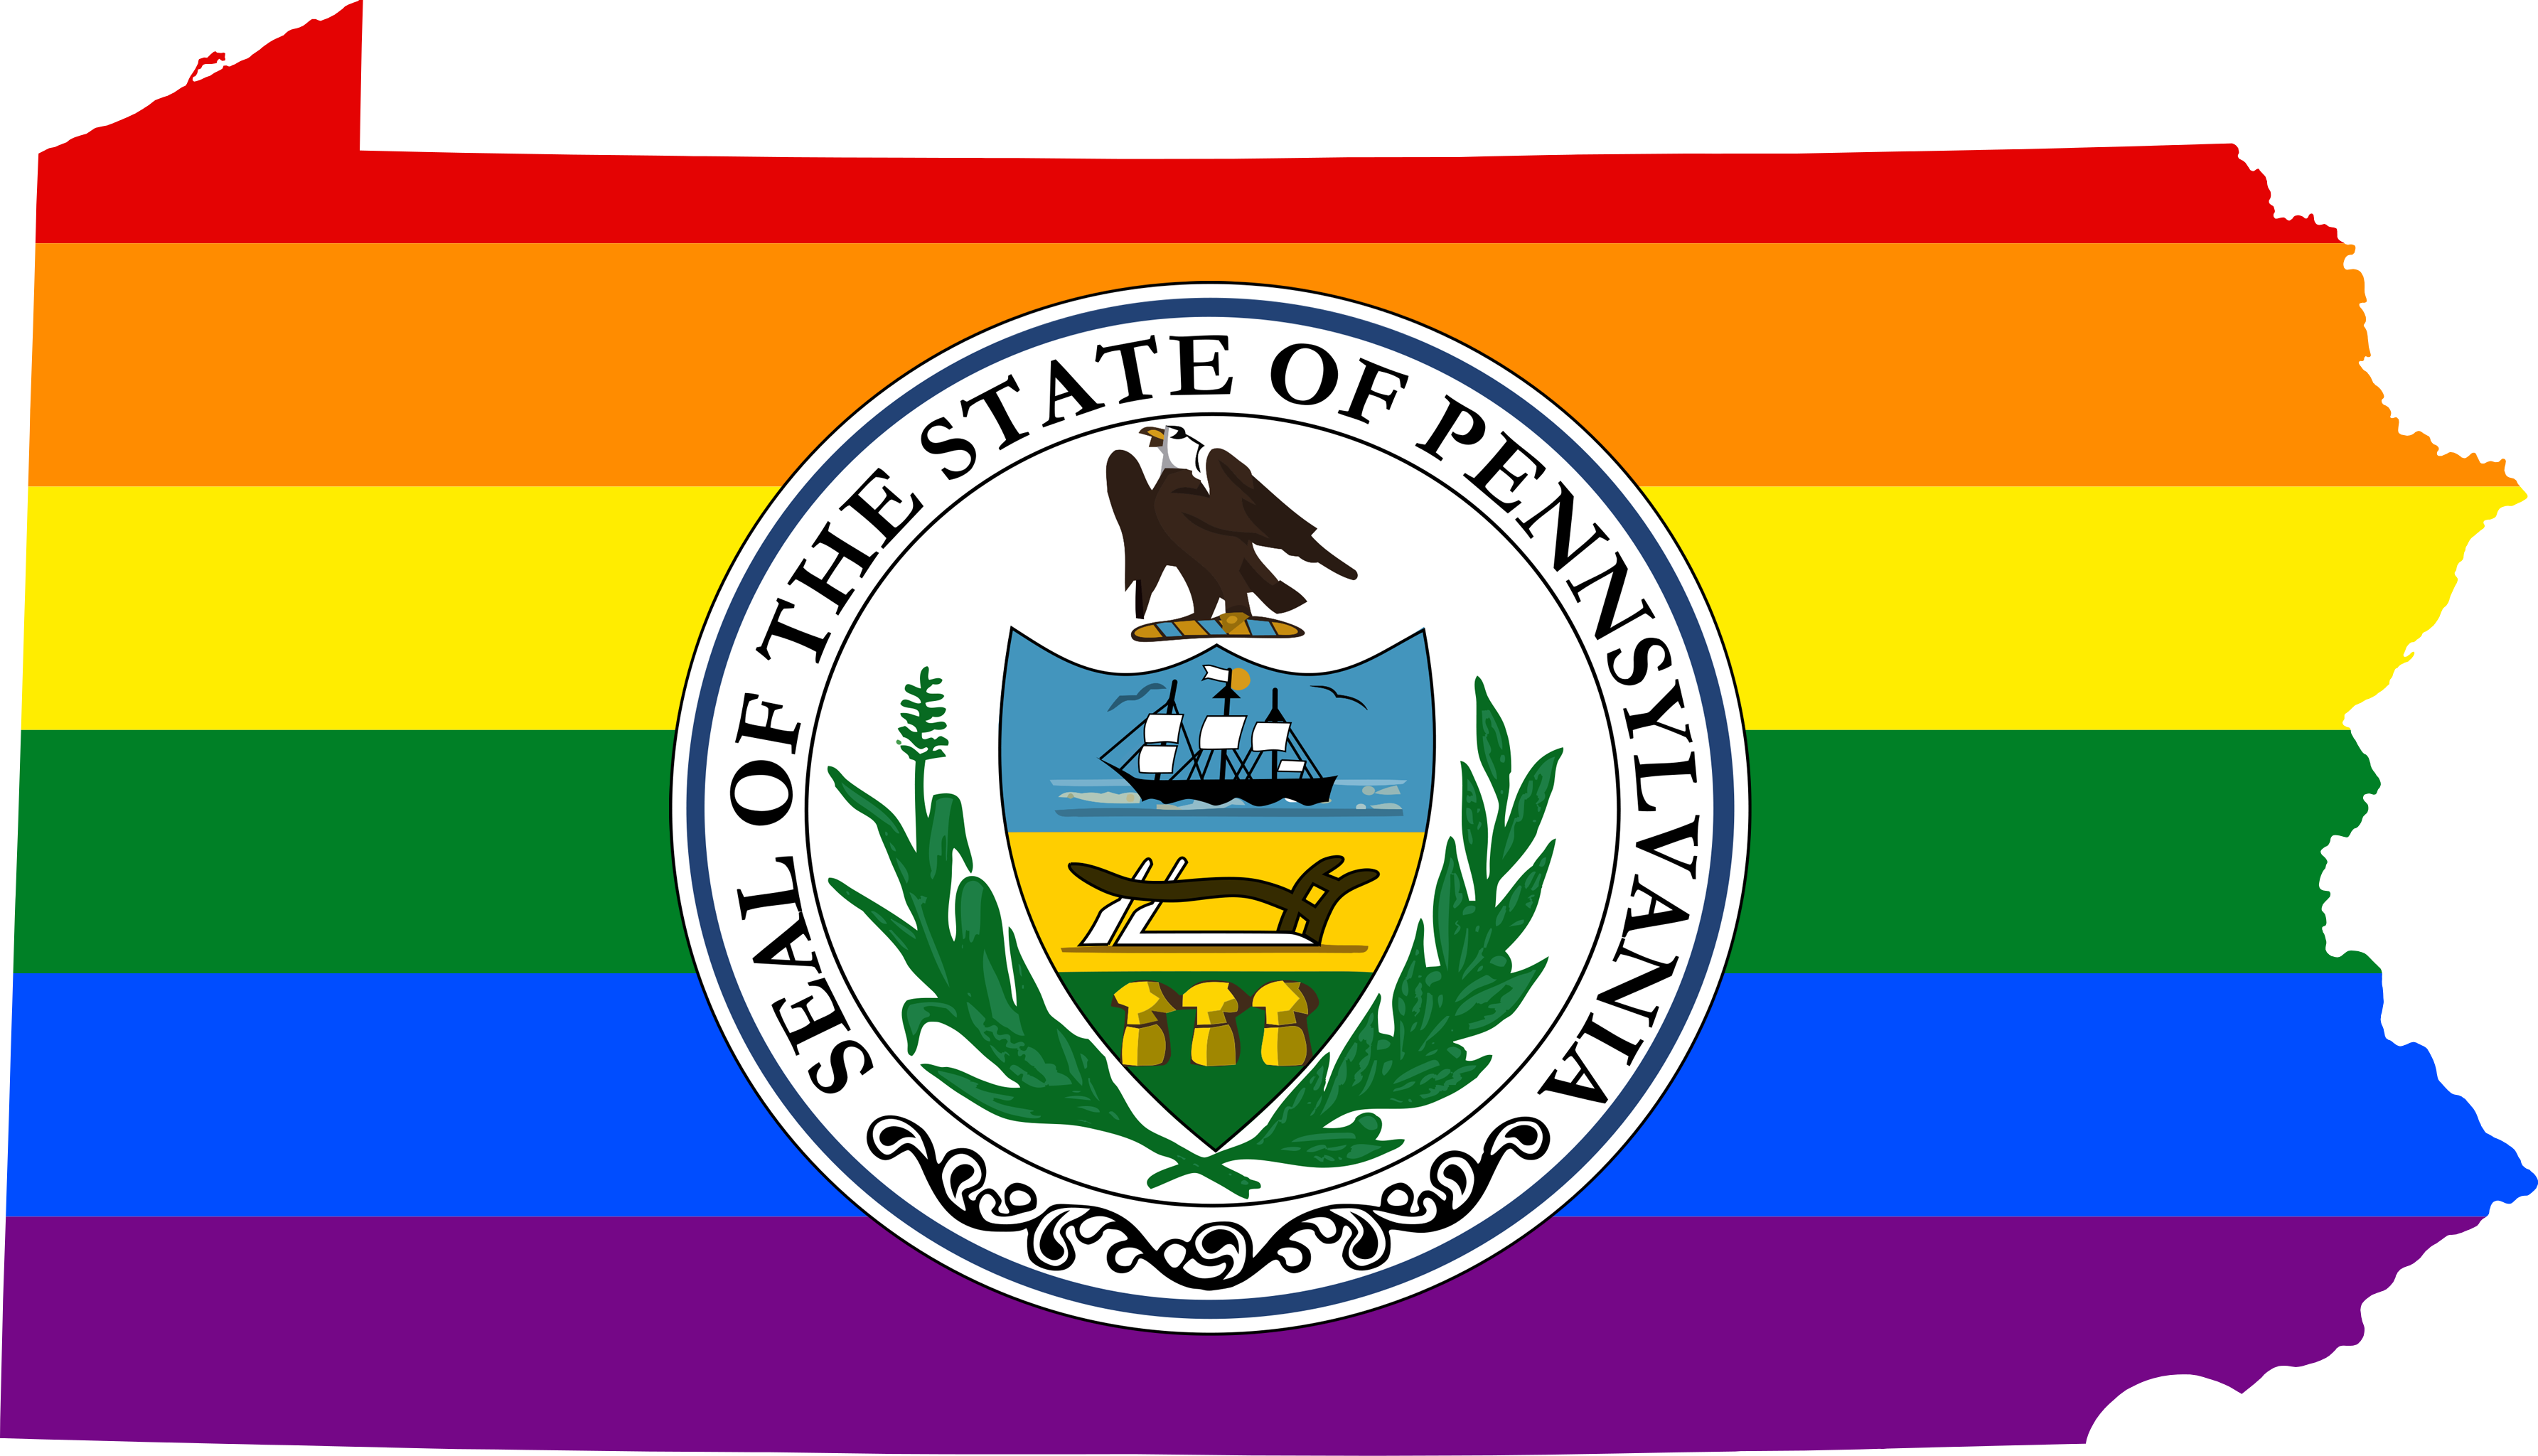 Pennsylvania LGBTQ